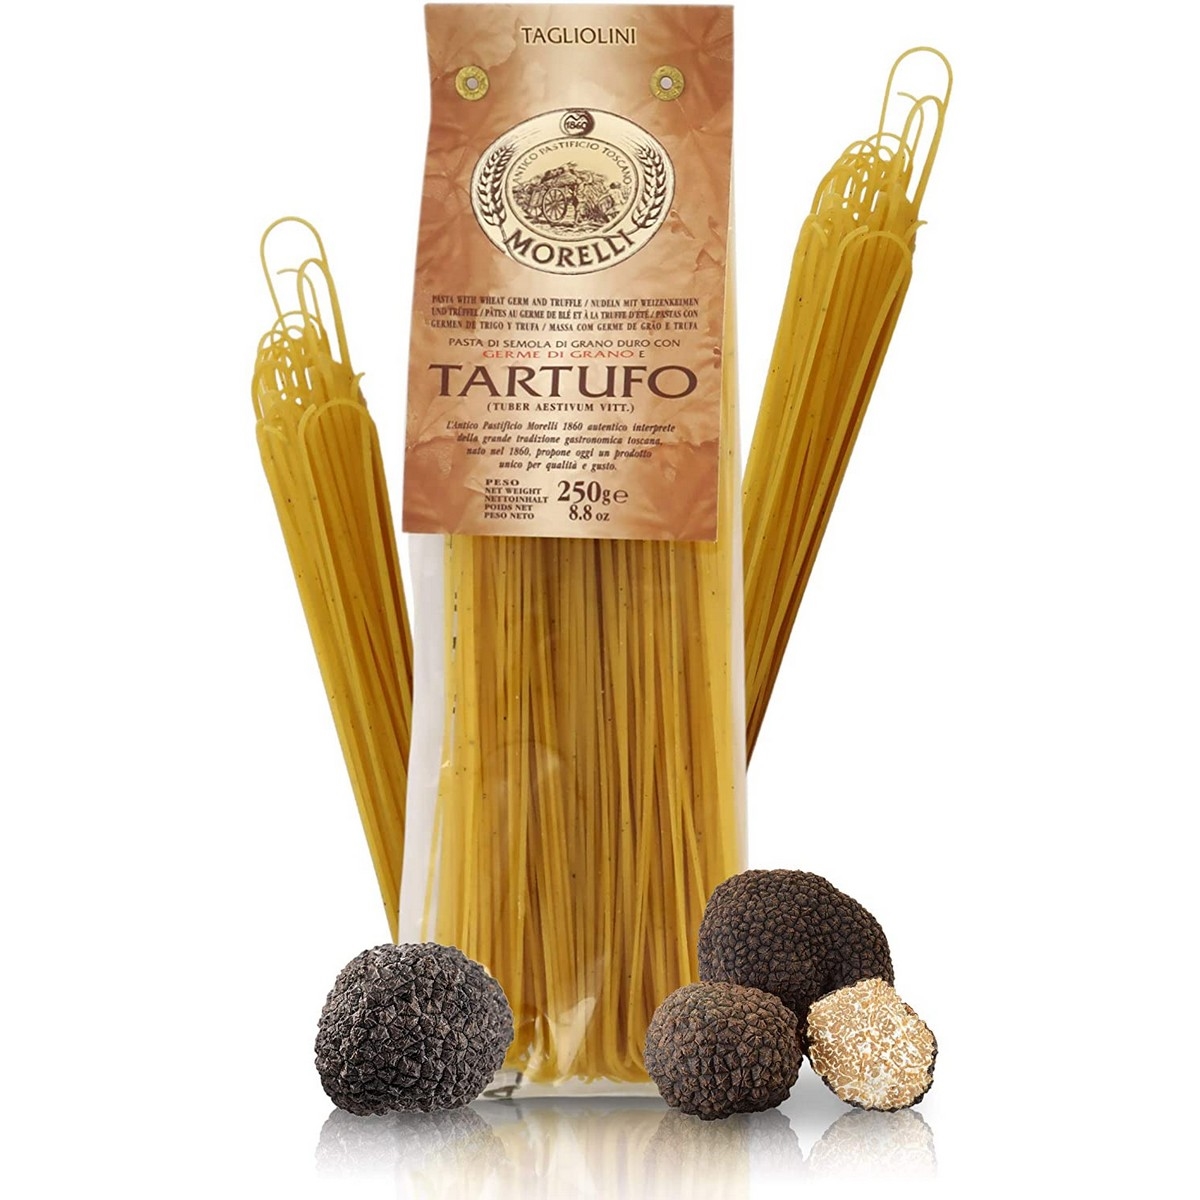 Antico pastorio morelli - pasta con sabor - trufa - tagliolini - 250 g